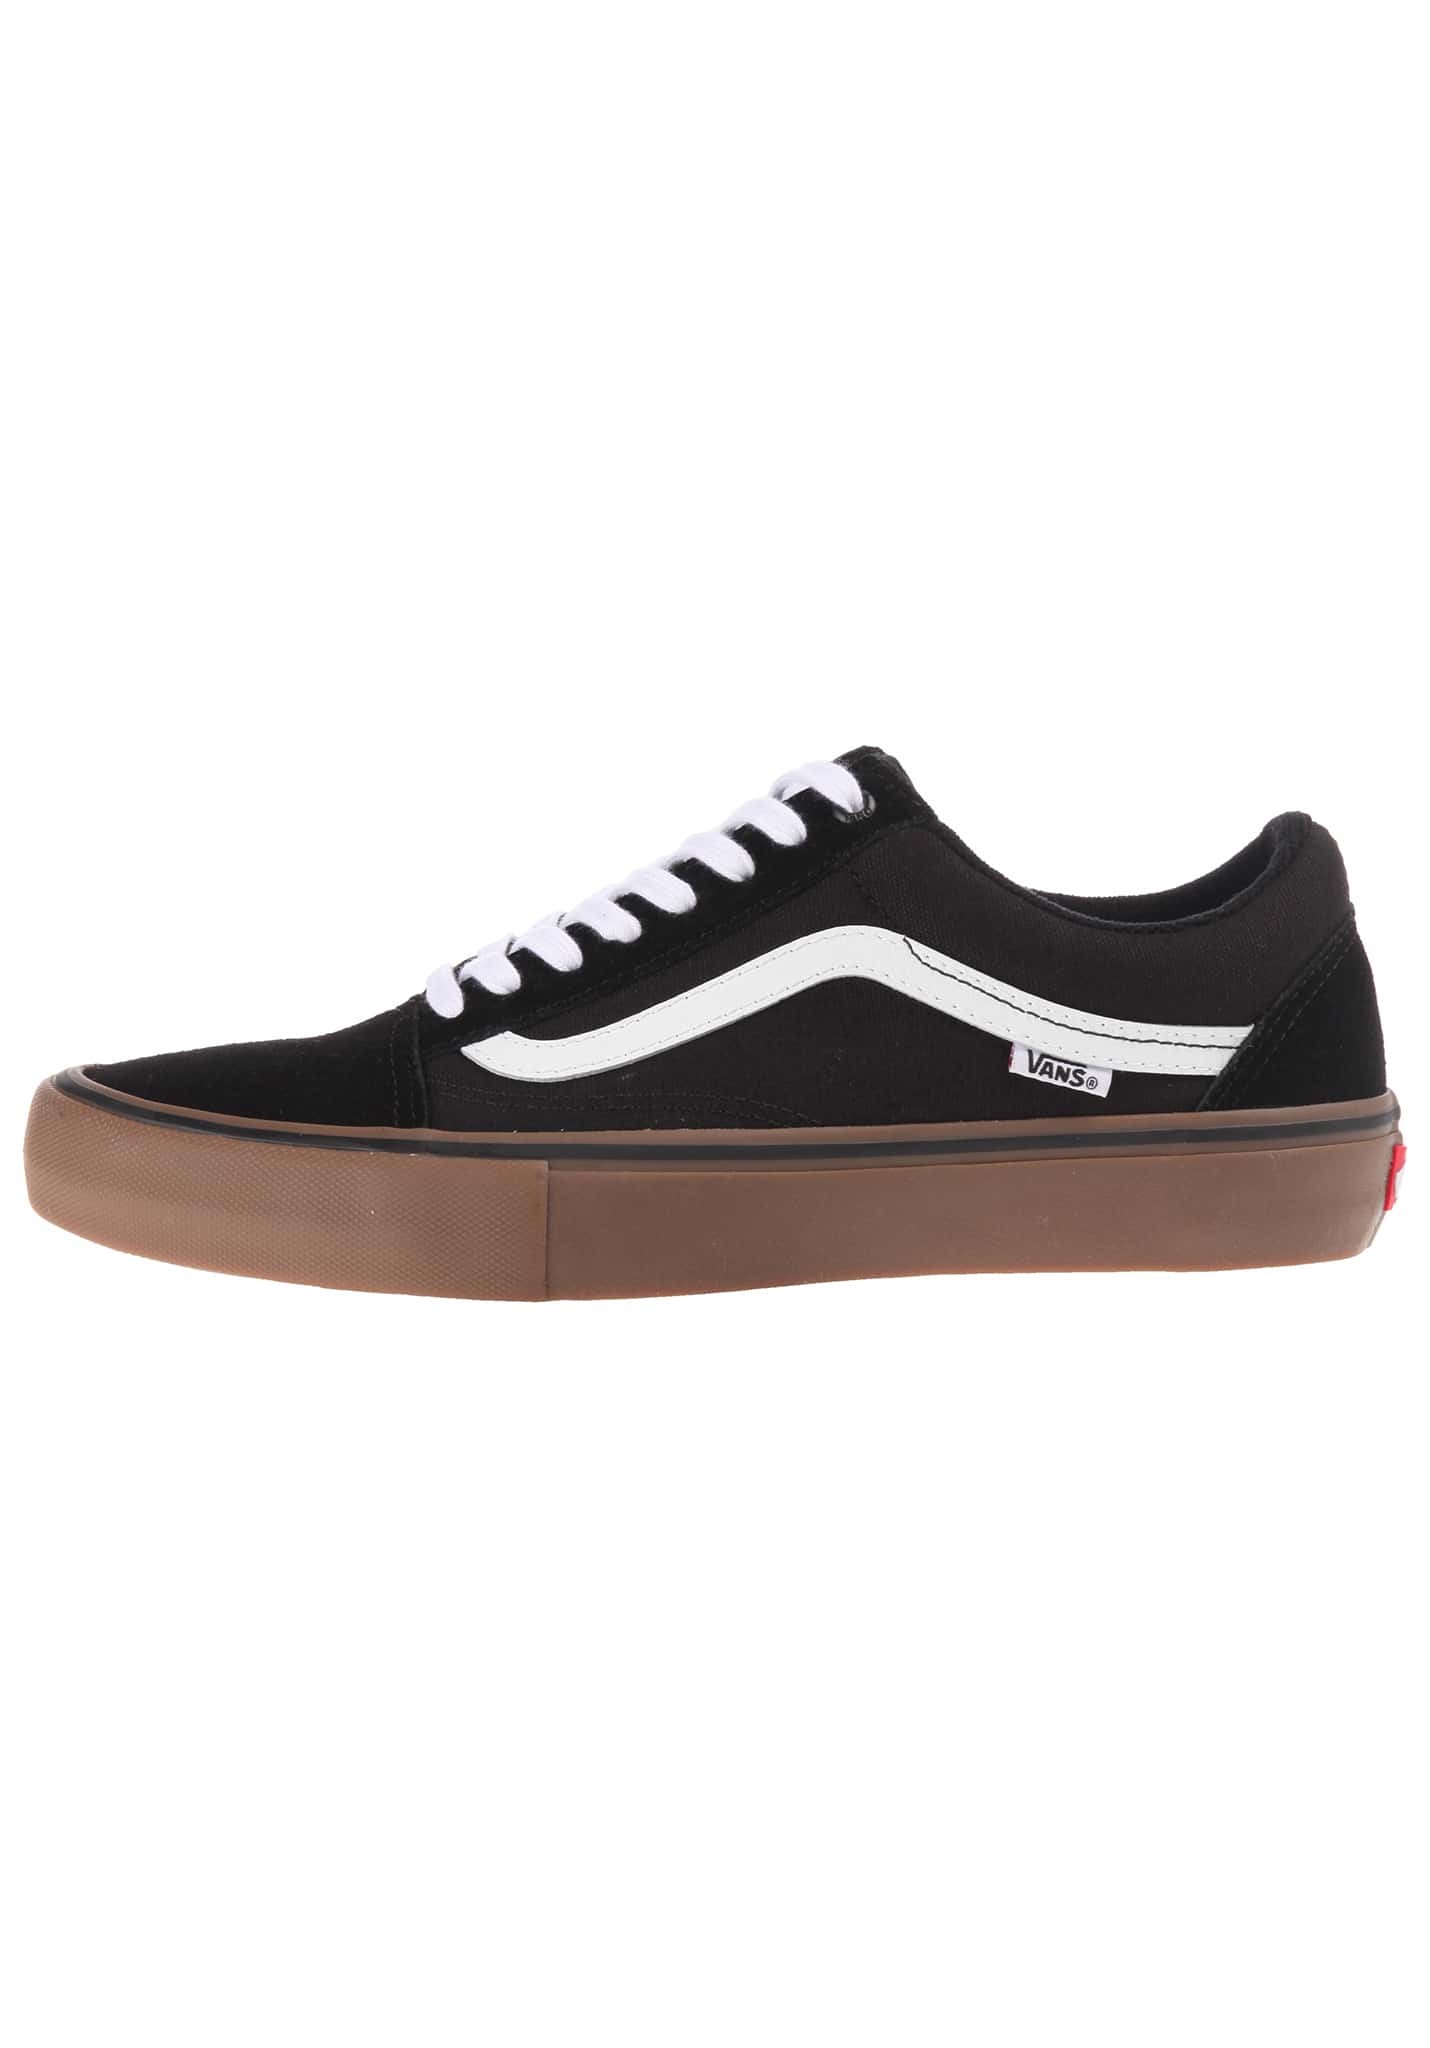 Vans Old Skool Pro Skateschuhe Low black/white/medium gum 39